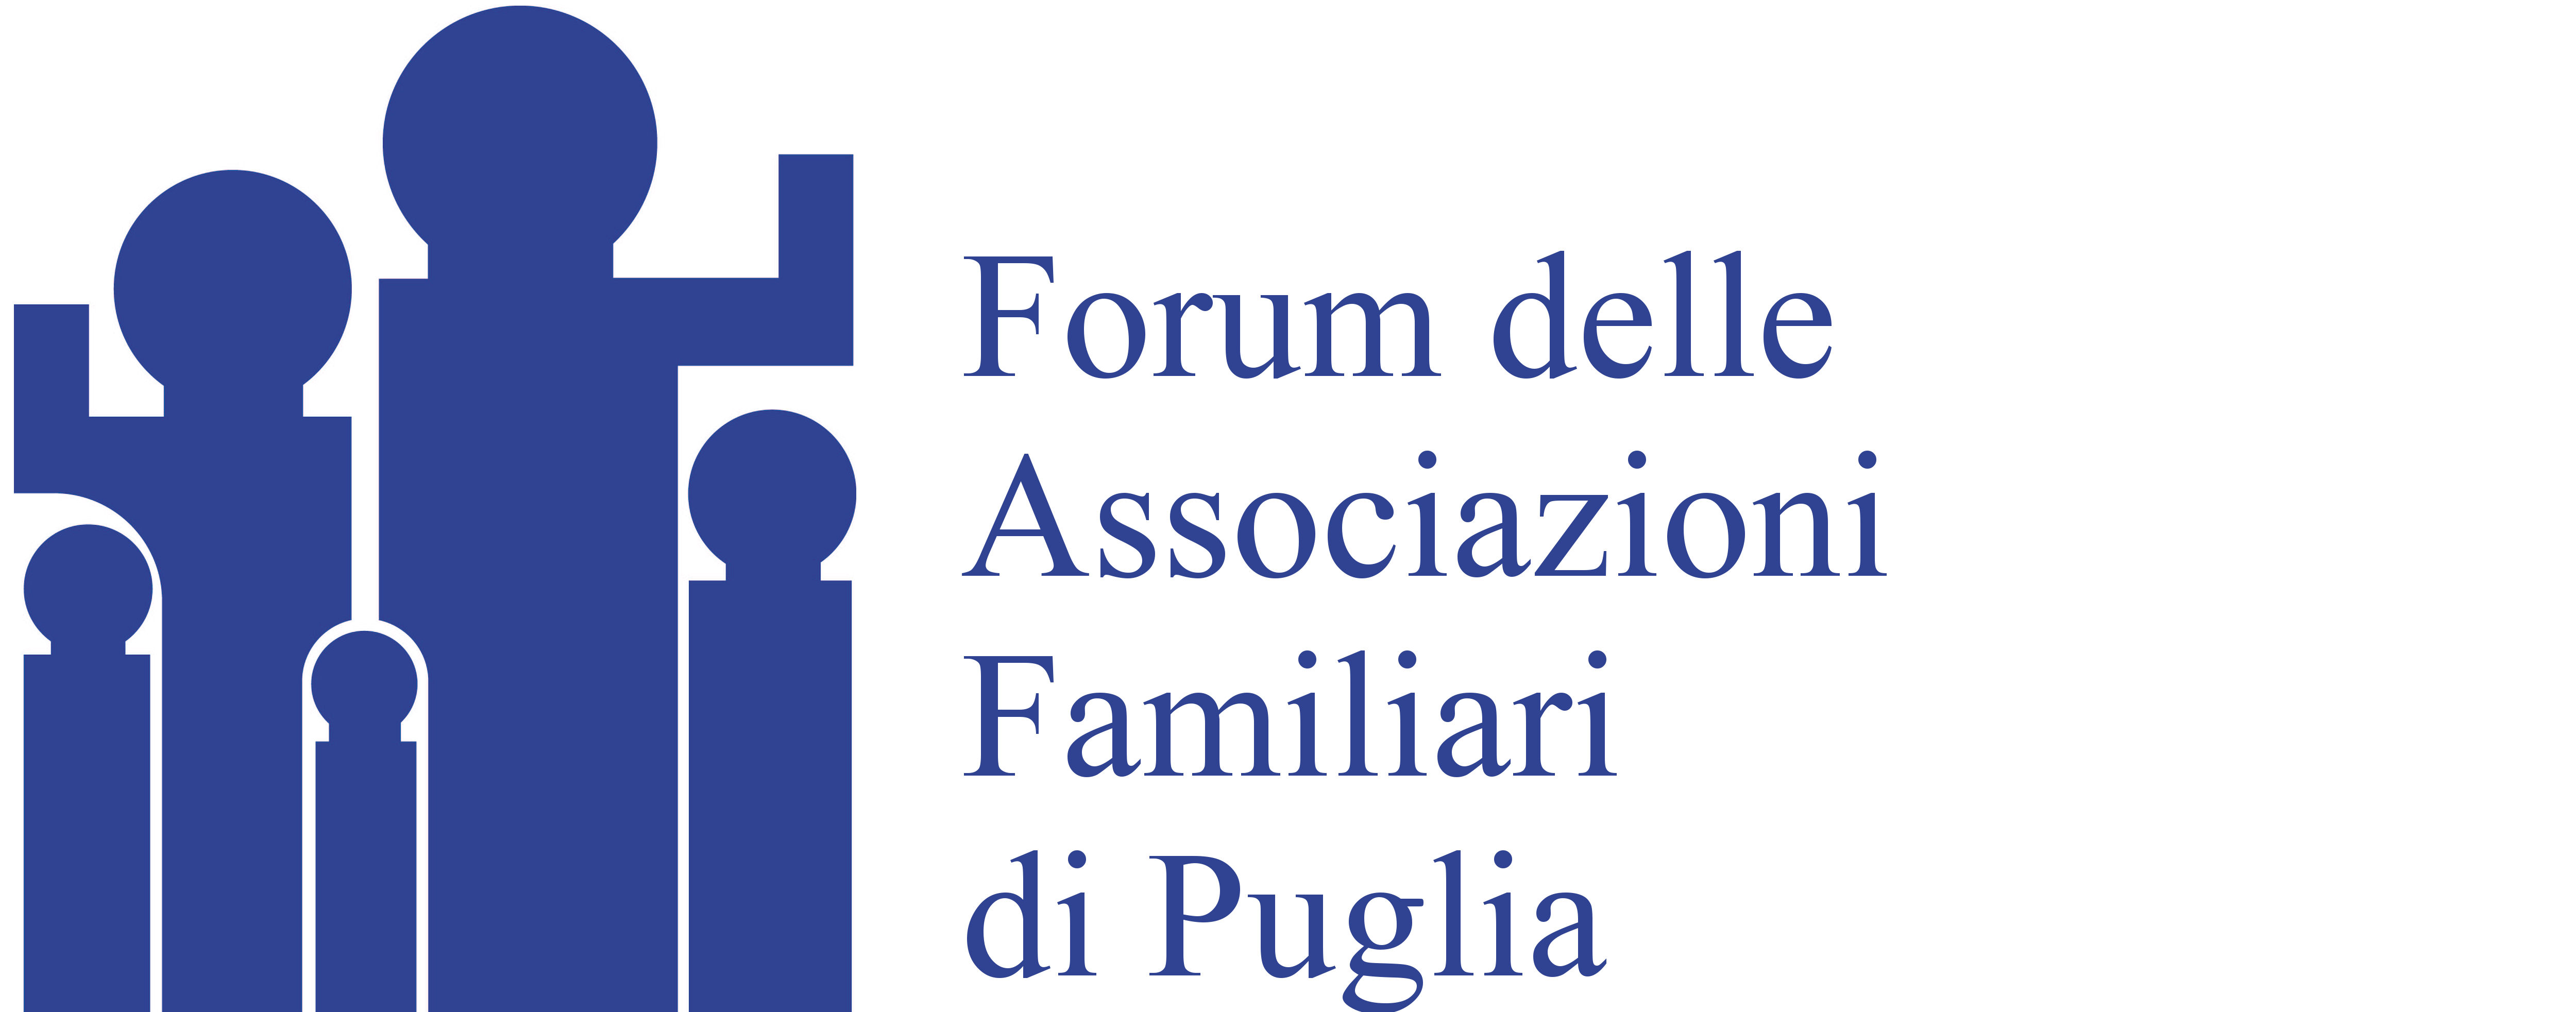 Forum delle Associazioni Familiari di Puglia